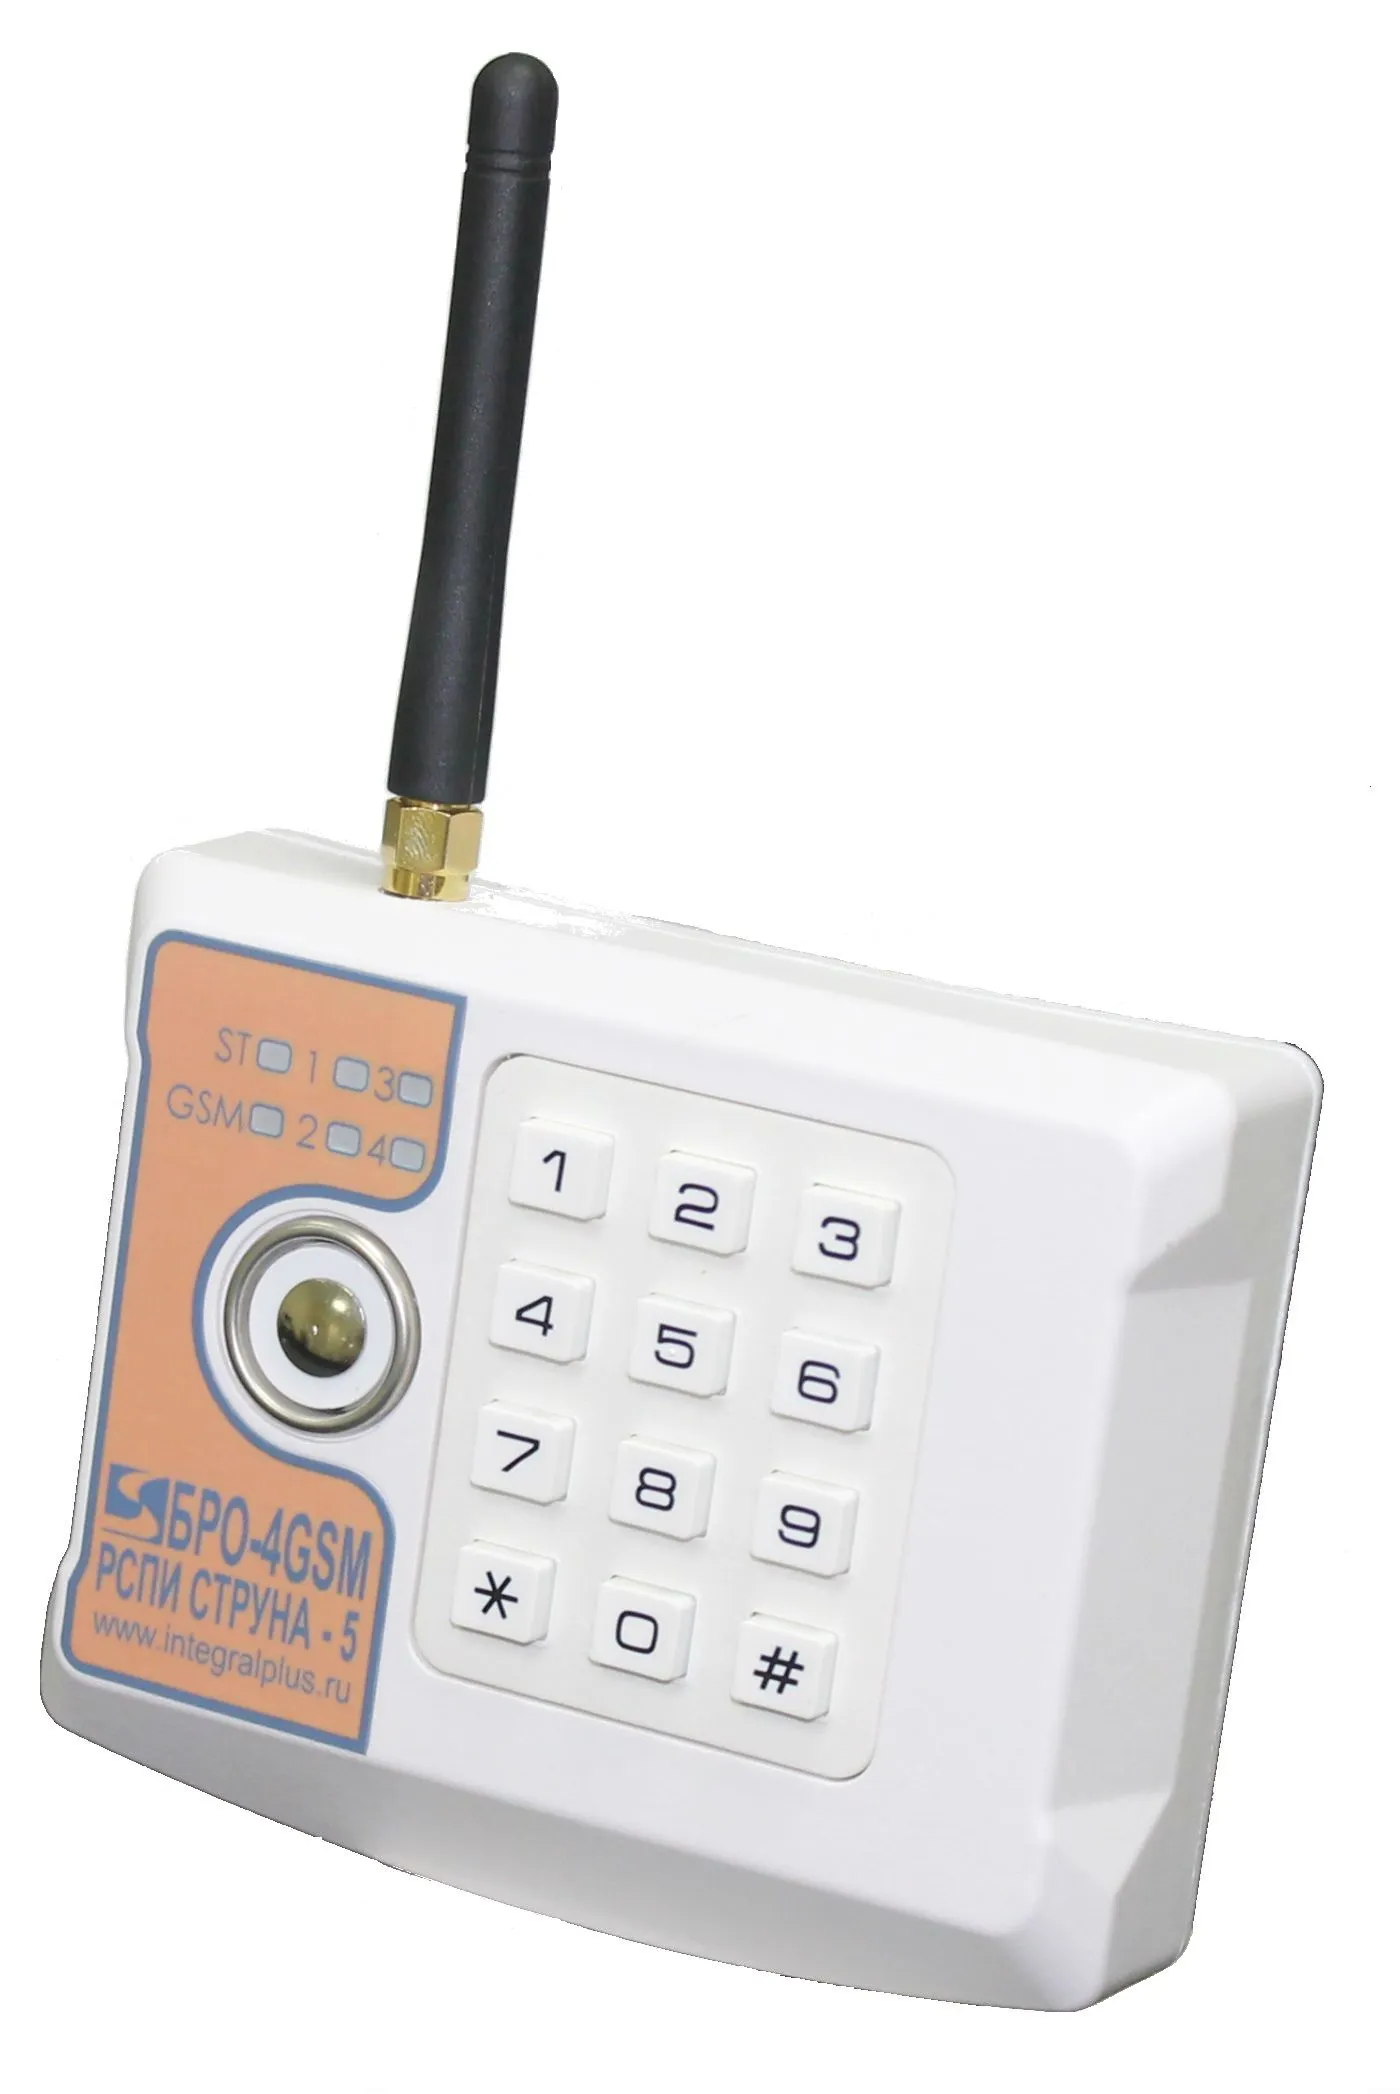 Бро 4 gsm ethernet. РСПИ струна 5 бро 4 GSM. Блок радиоканальный объектовый бро-4 GSM. Блок радиоканальный объектовый GSM четырехшлейфный бро-4-GSM. РСПИ струна-5 GSM.